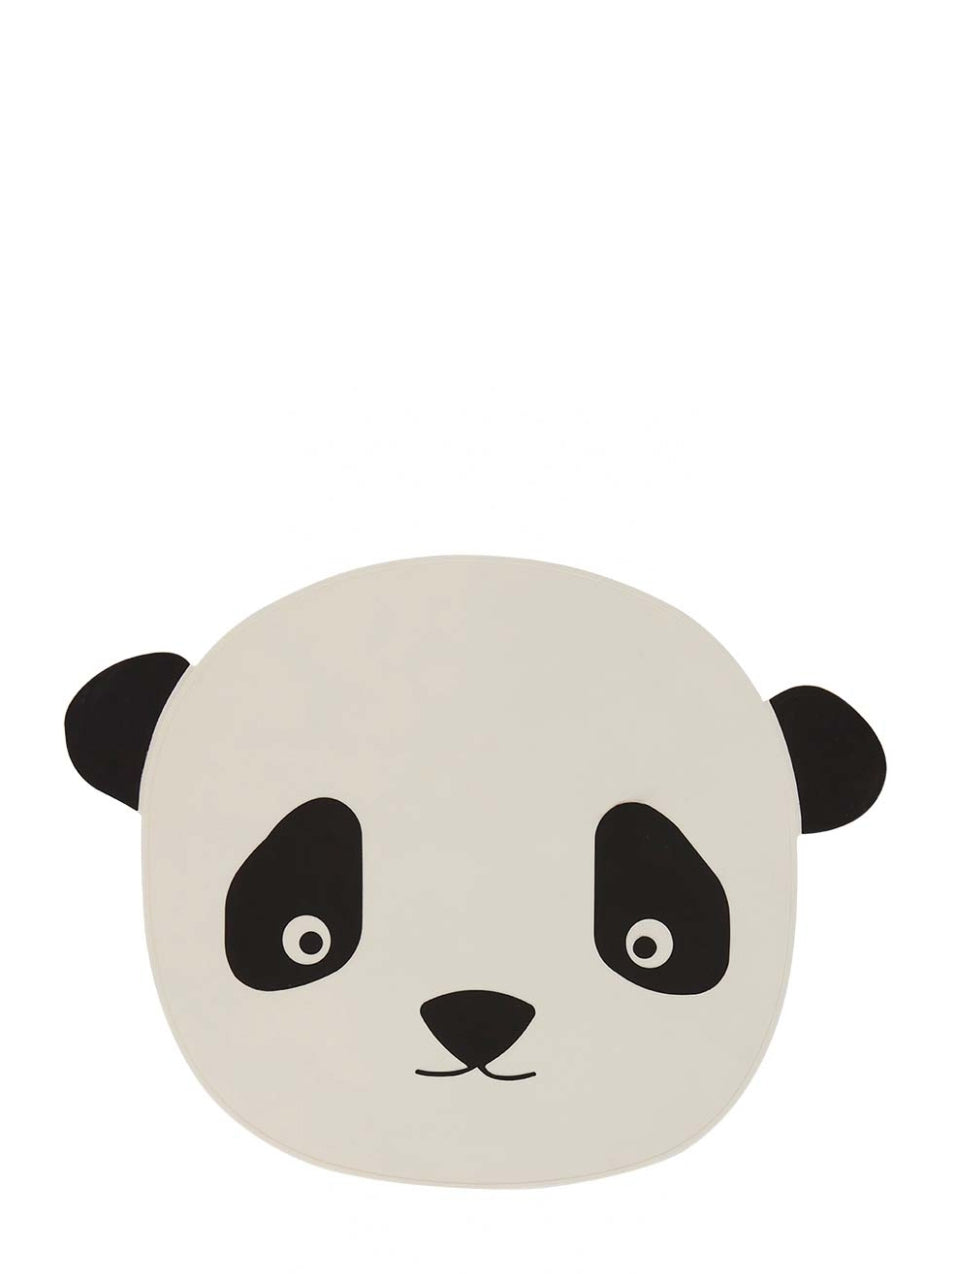 Silicone placemat panda, black-white